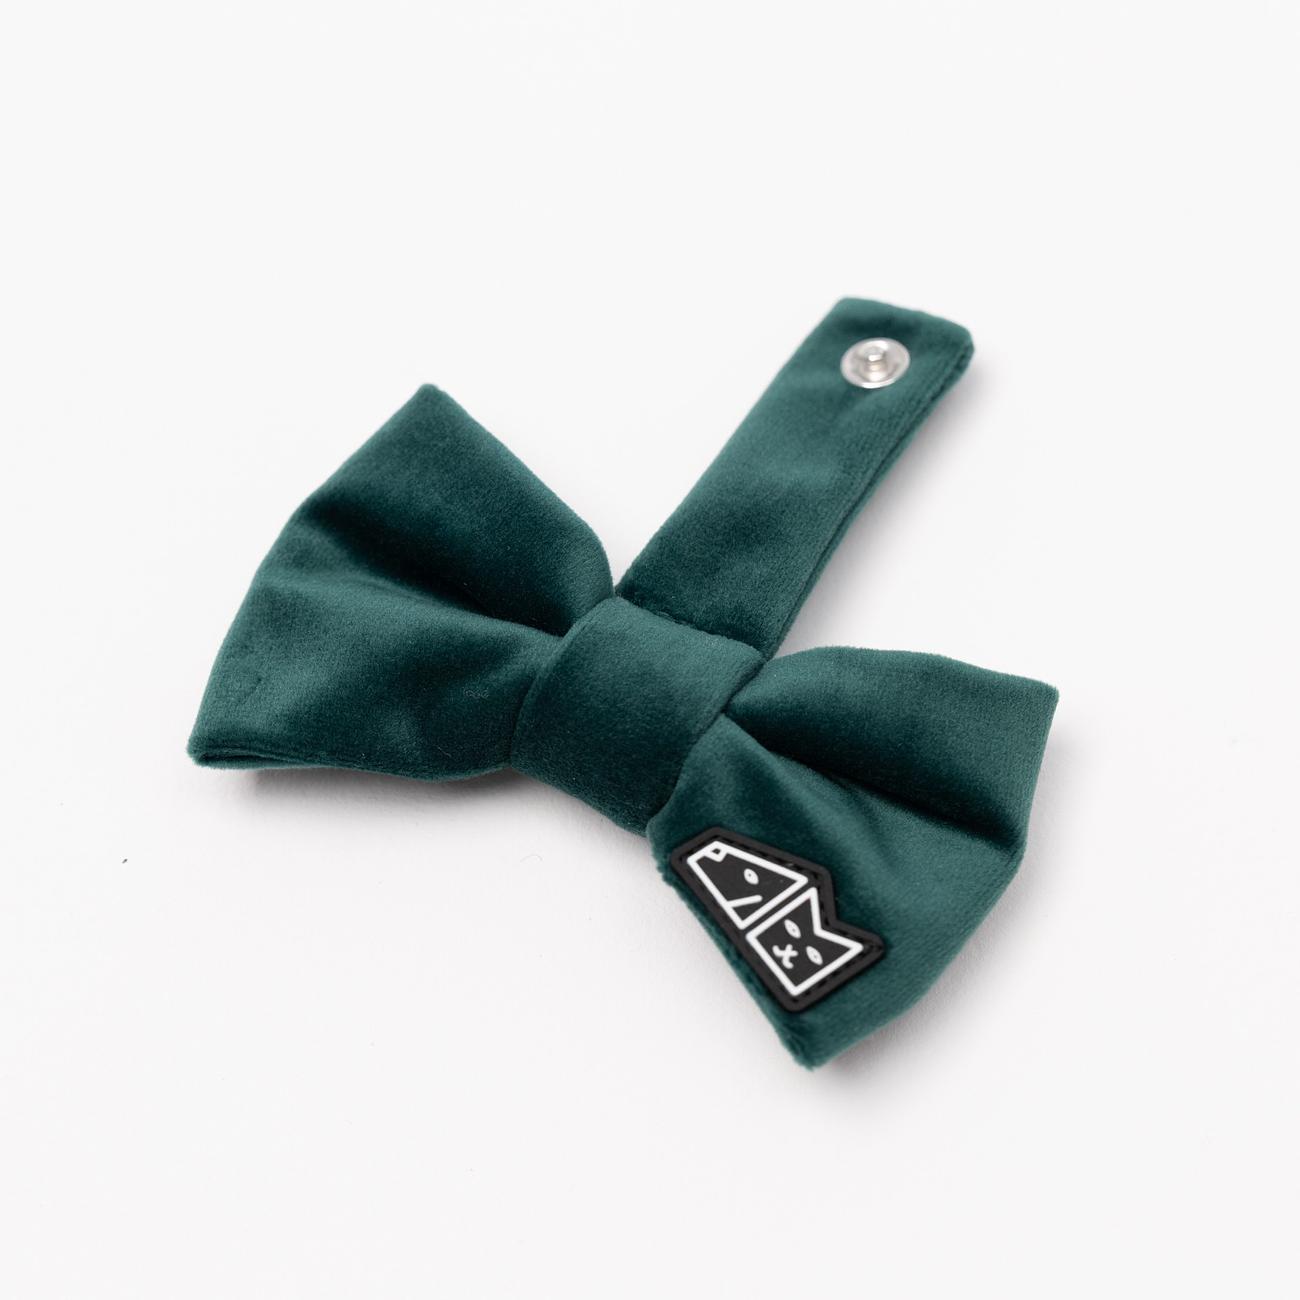 Bow tie "Bottle green" 